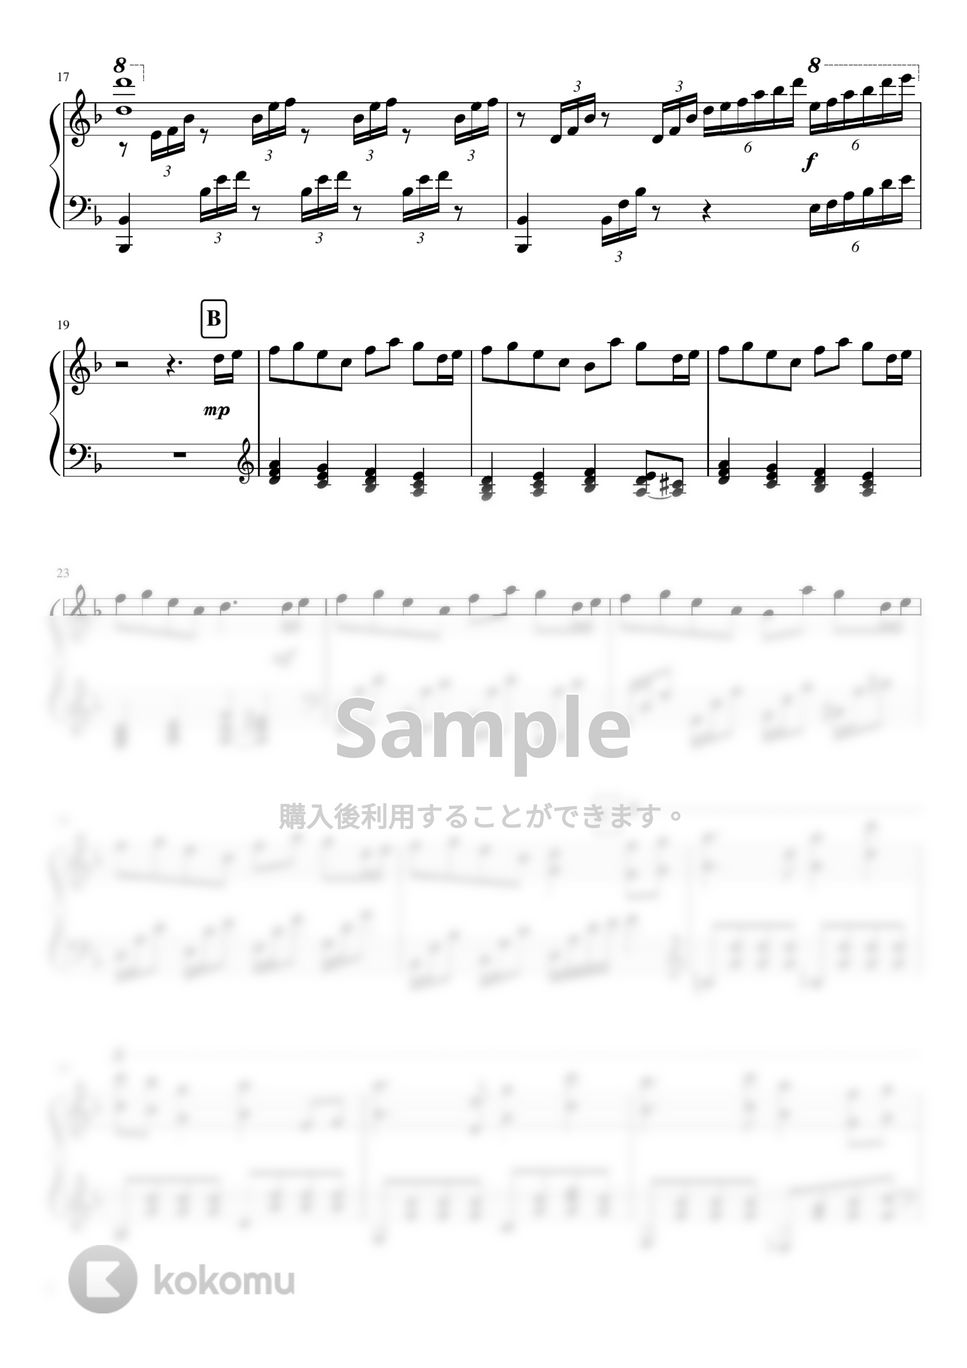 鬼滅の刃 - サントラ楽譜集 vol.1 (10曲) by soup-majo